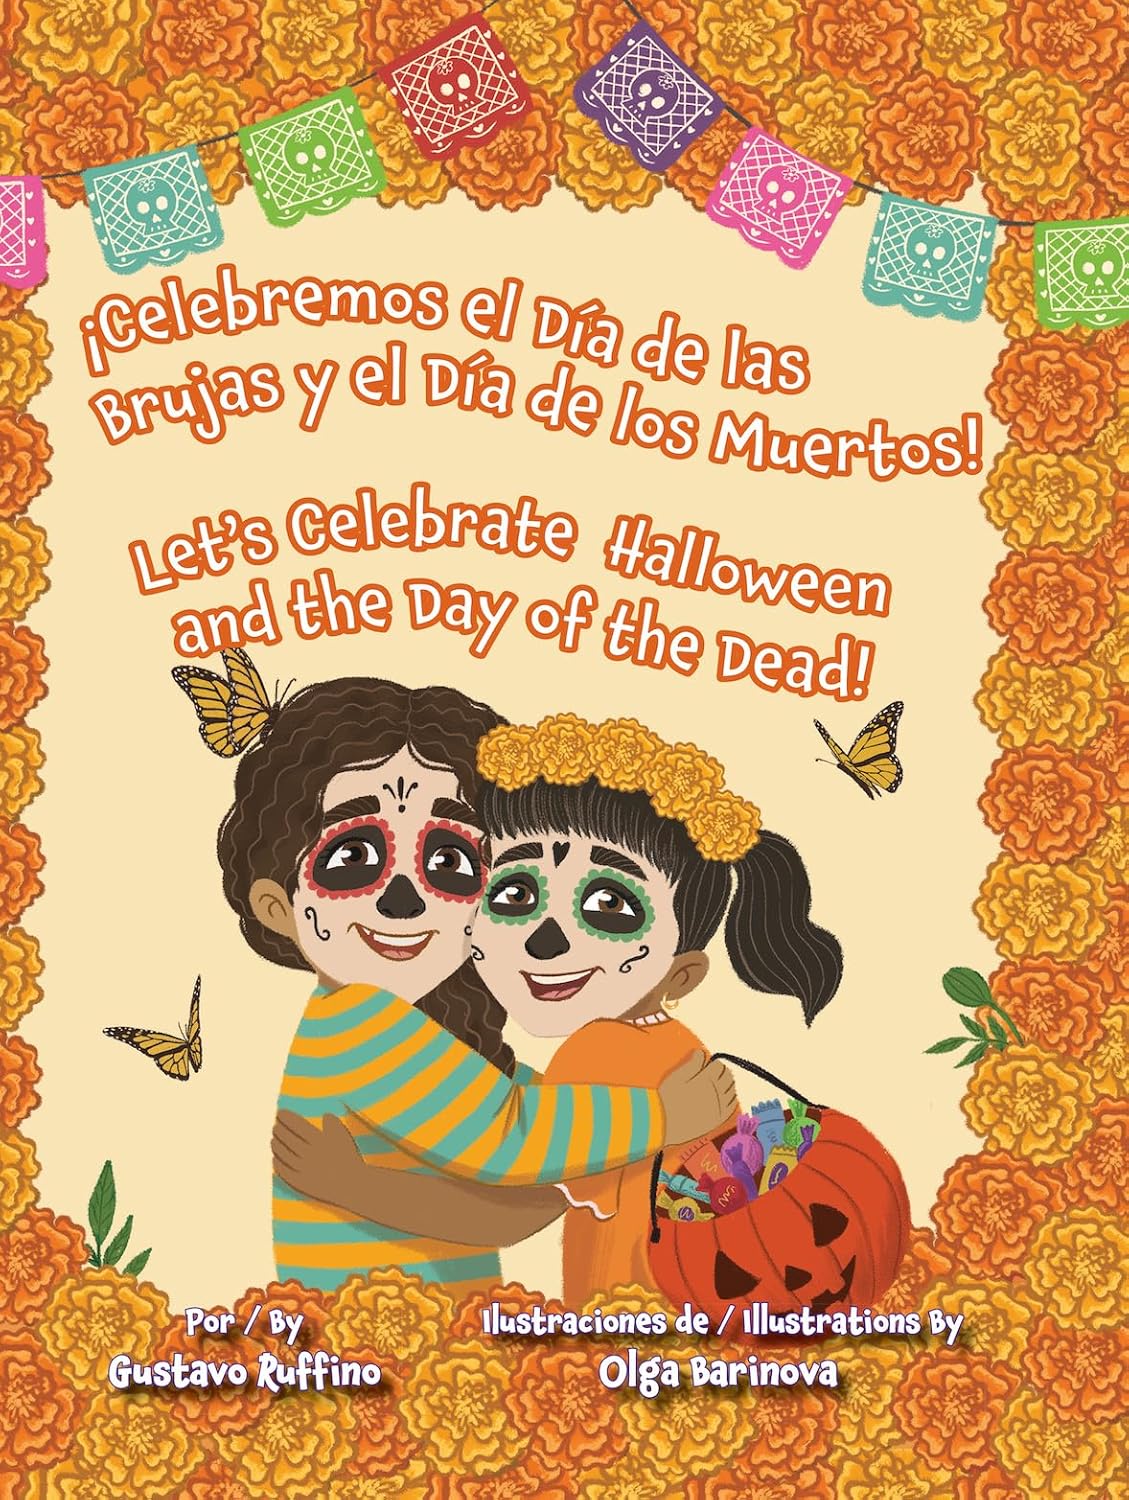 ¡Celebremos El Día de las Brujas Y El Día de los Muertos!/Let’s Celebrate Halloween and the Day of the Dead!